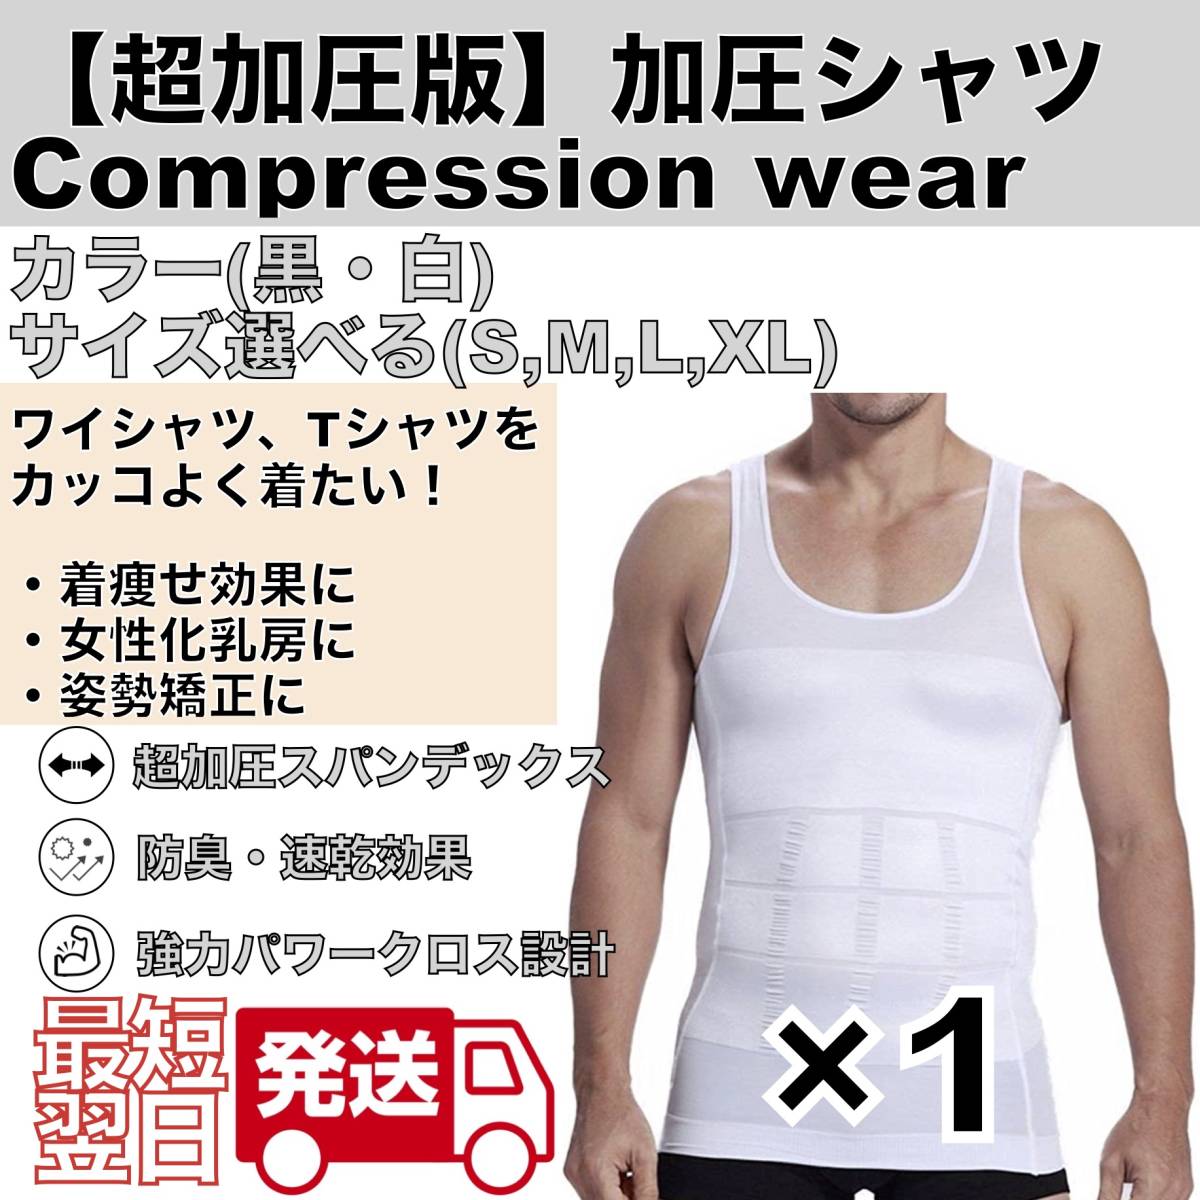 加圧インナー シャツ メンズ 大きいサイズ 補正下着 女性化乳房 コンプレッションウェア スパンデックス ダイエット 筋トレの画像1